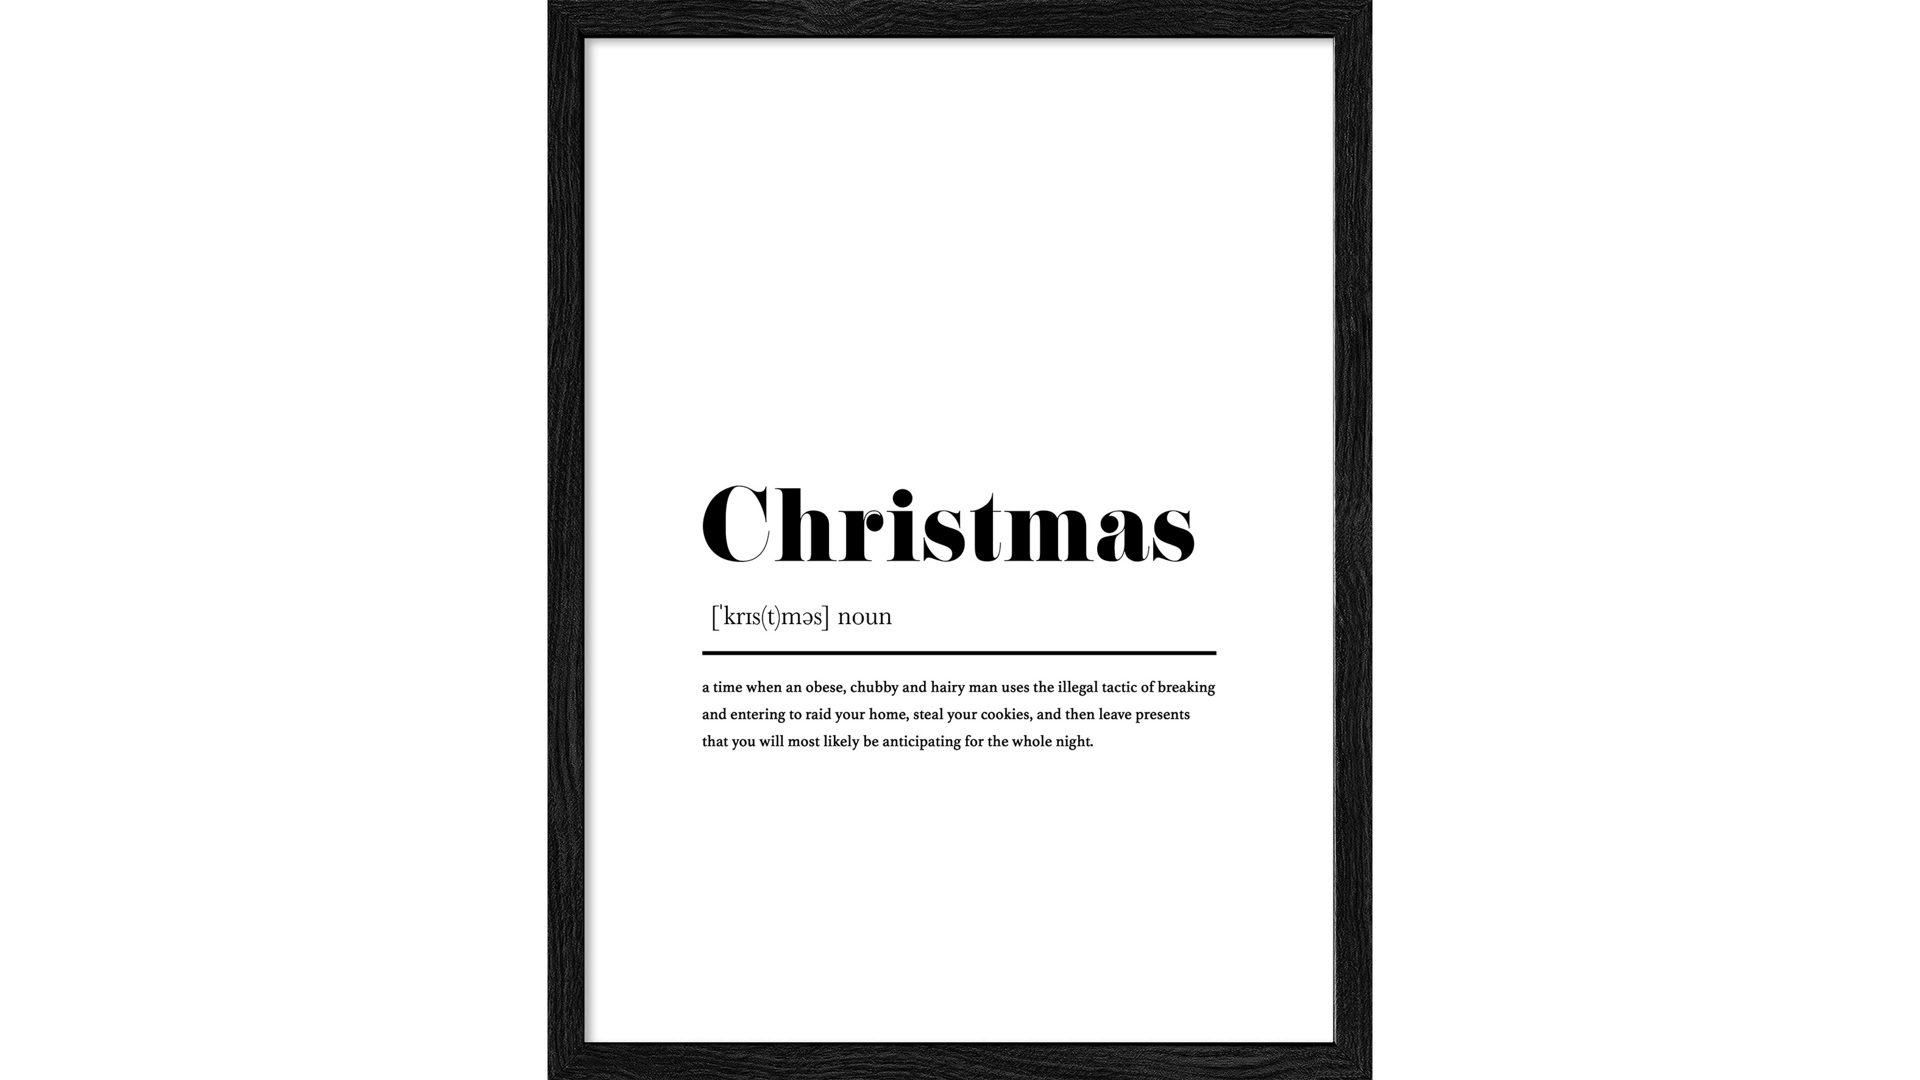 Kunstdruck Interliving BEST BUDDYS! aus Karton / Papier / Pappe in Weiß Interliving BEST BUDDYS! Kunstdruck Christmas 1 Weiß & Schwarz - ca. 33 x 43 cm